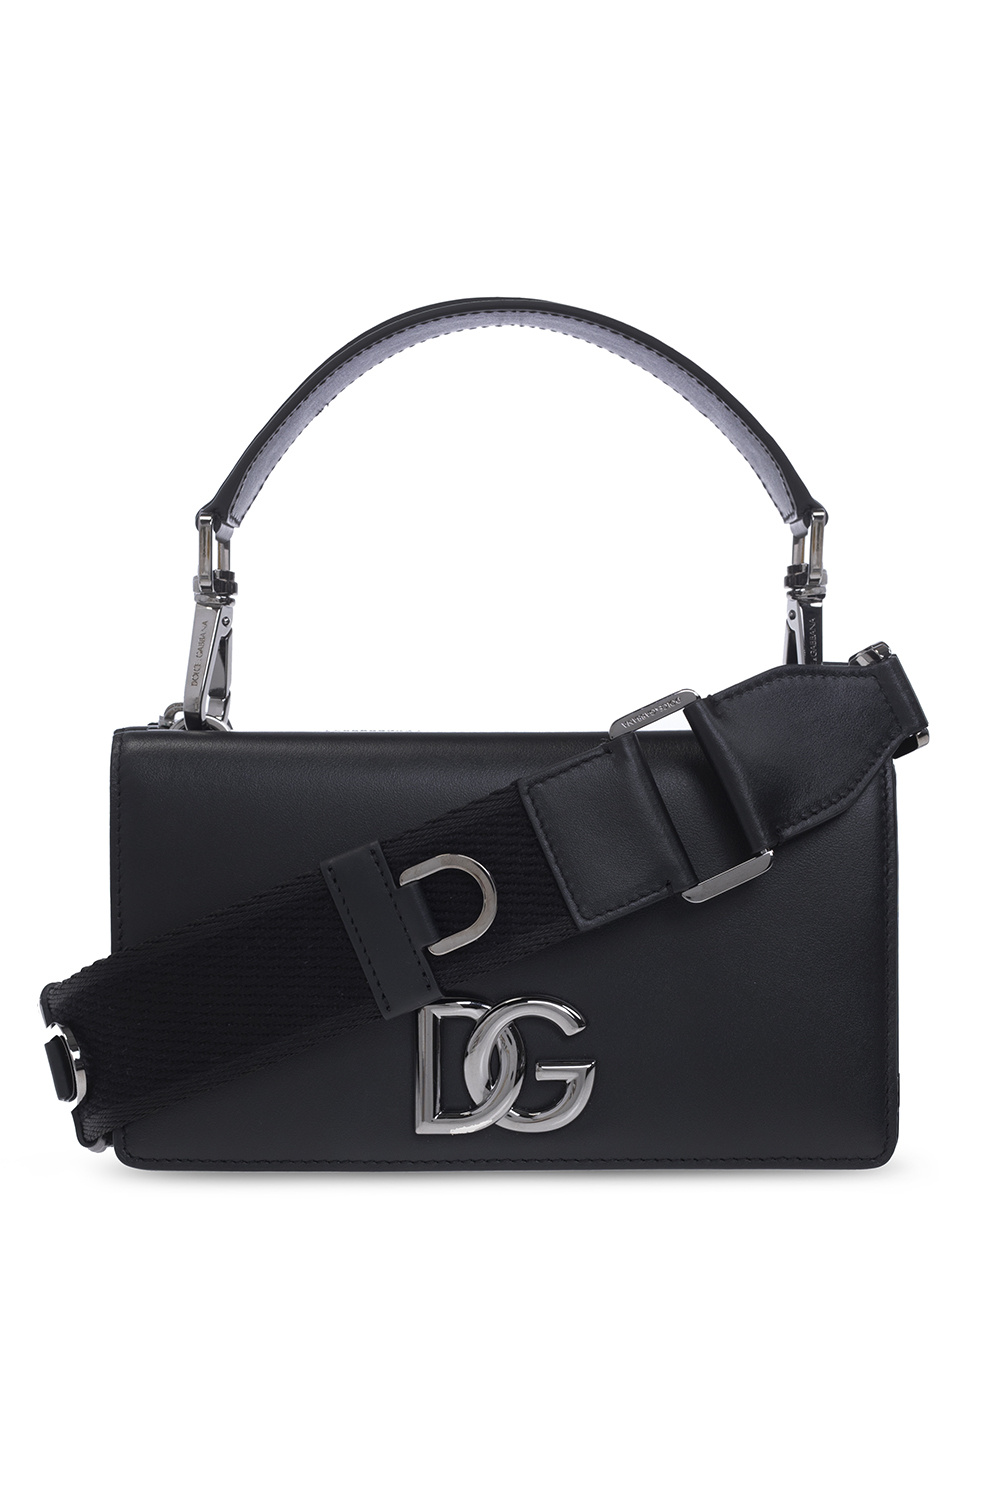 Dolce & Gabbana iPhone Pro Max Hülle Schwarz Leather shoulder bag